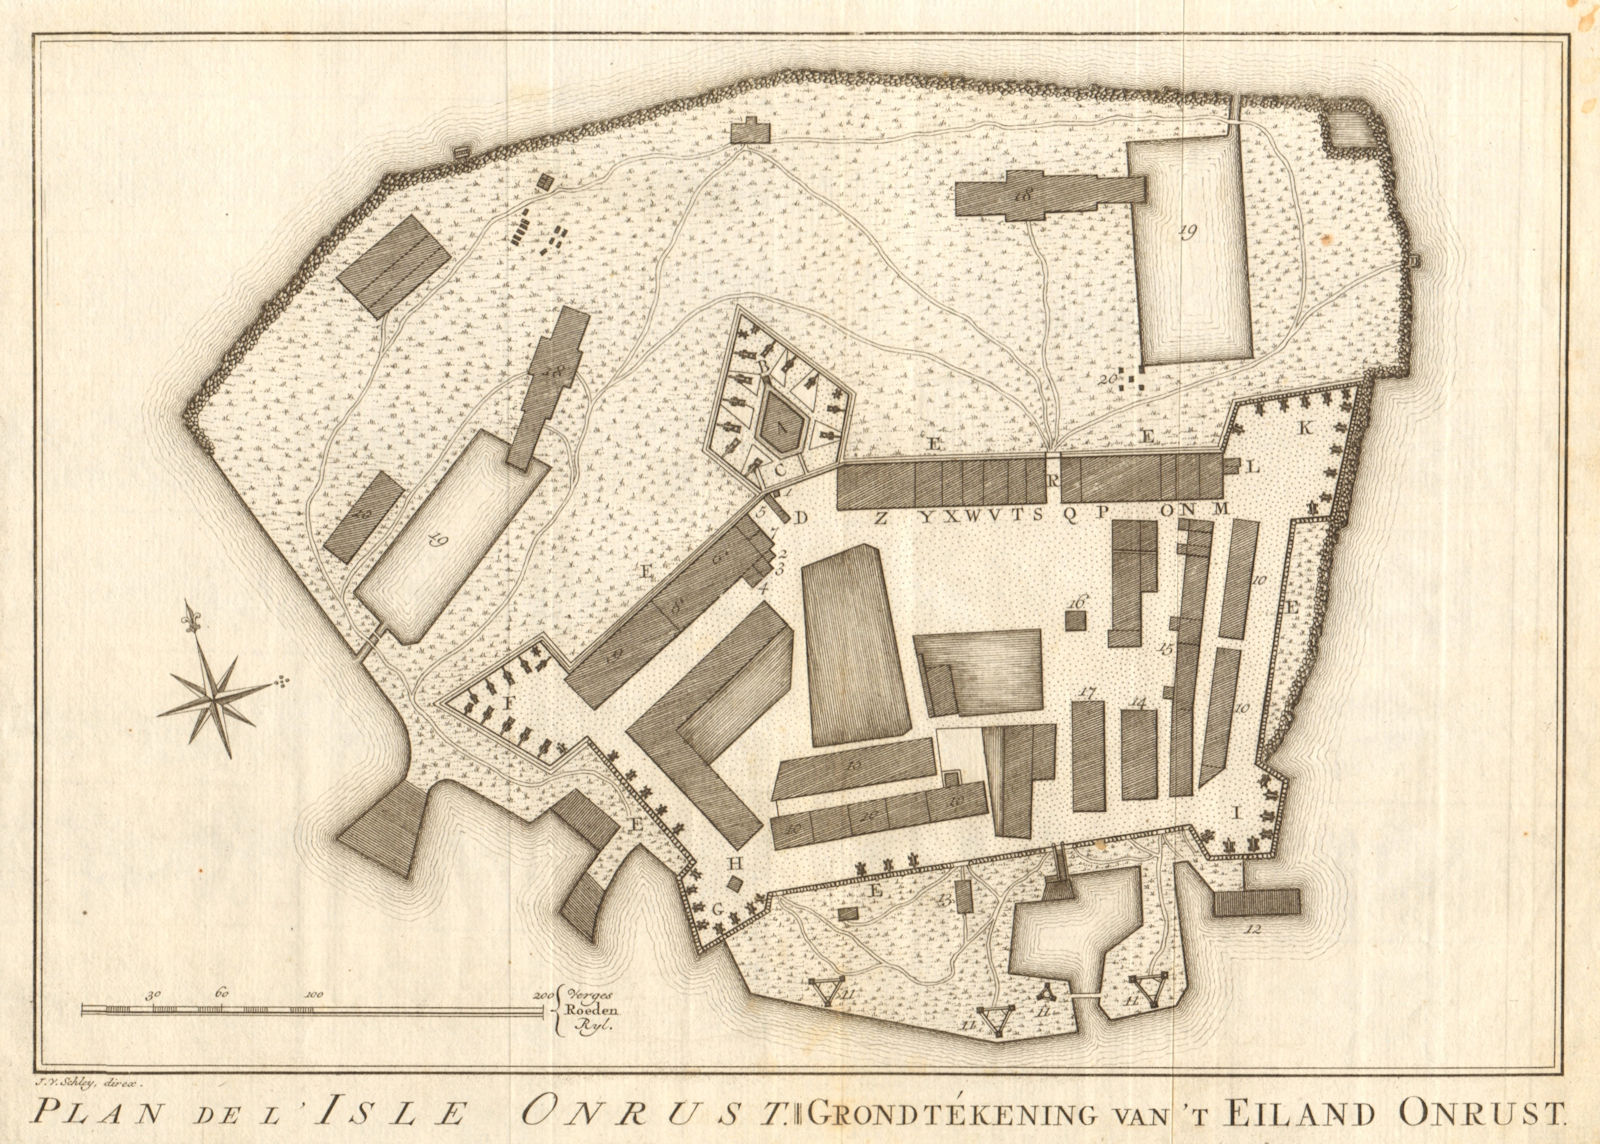 Associate Product 'Plan de I'Isle Onrust'. Jakarta. Pulau Kapal island. BELLIN/SCHLEY 1763 map